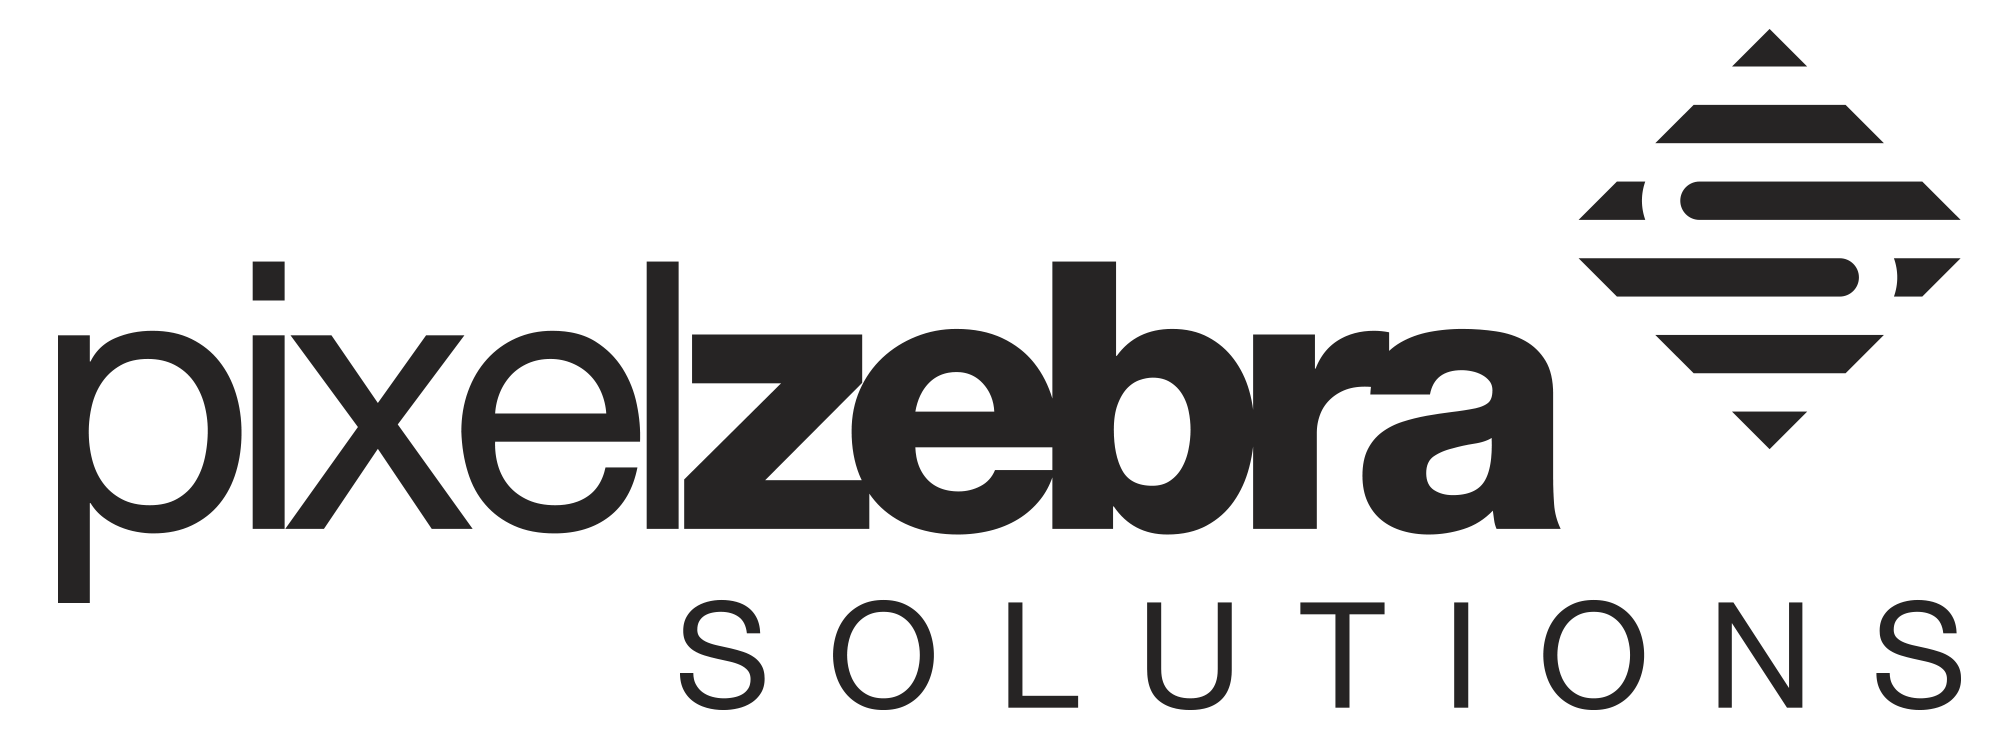 Logo Pixelzebra Solutions